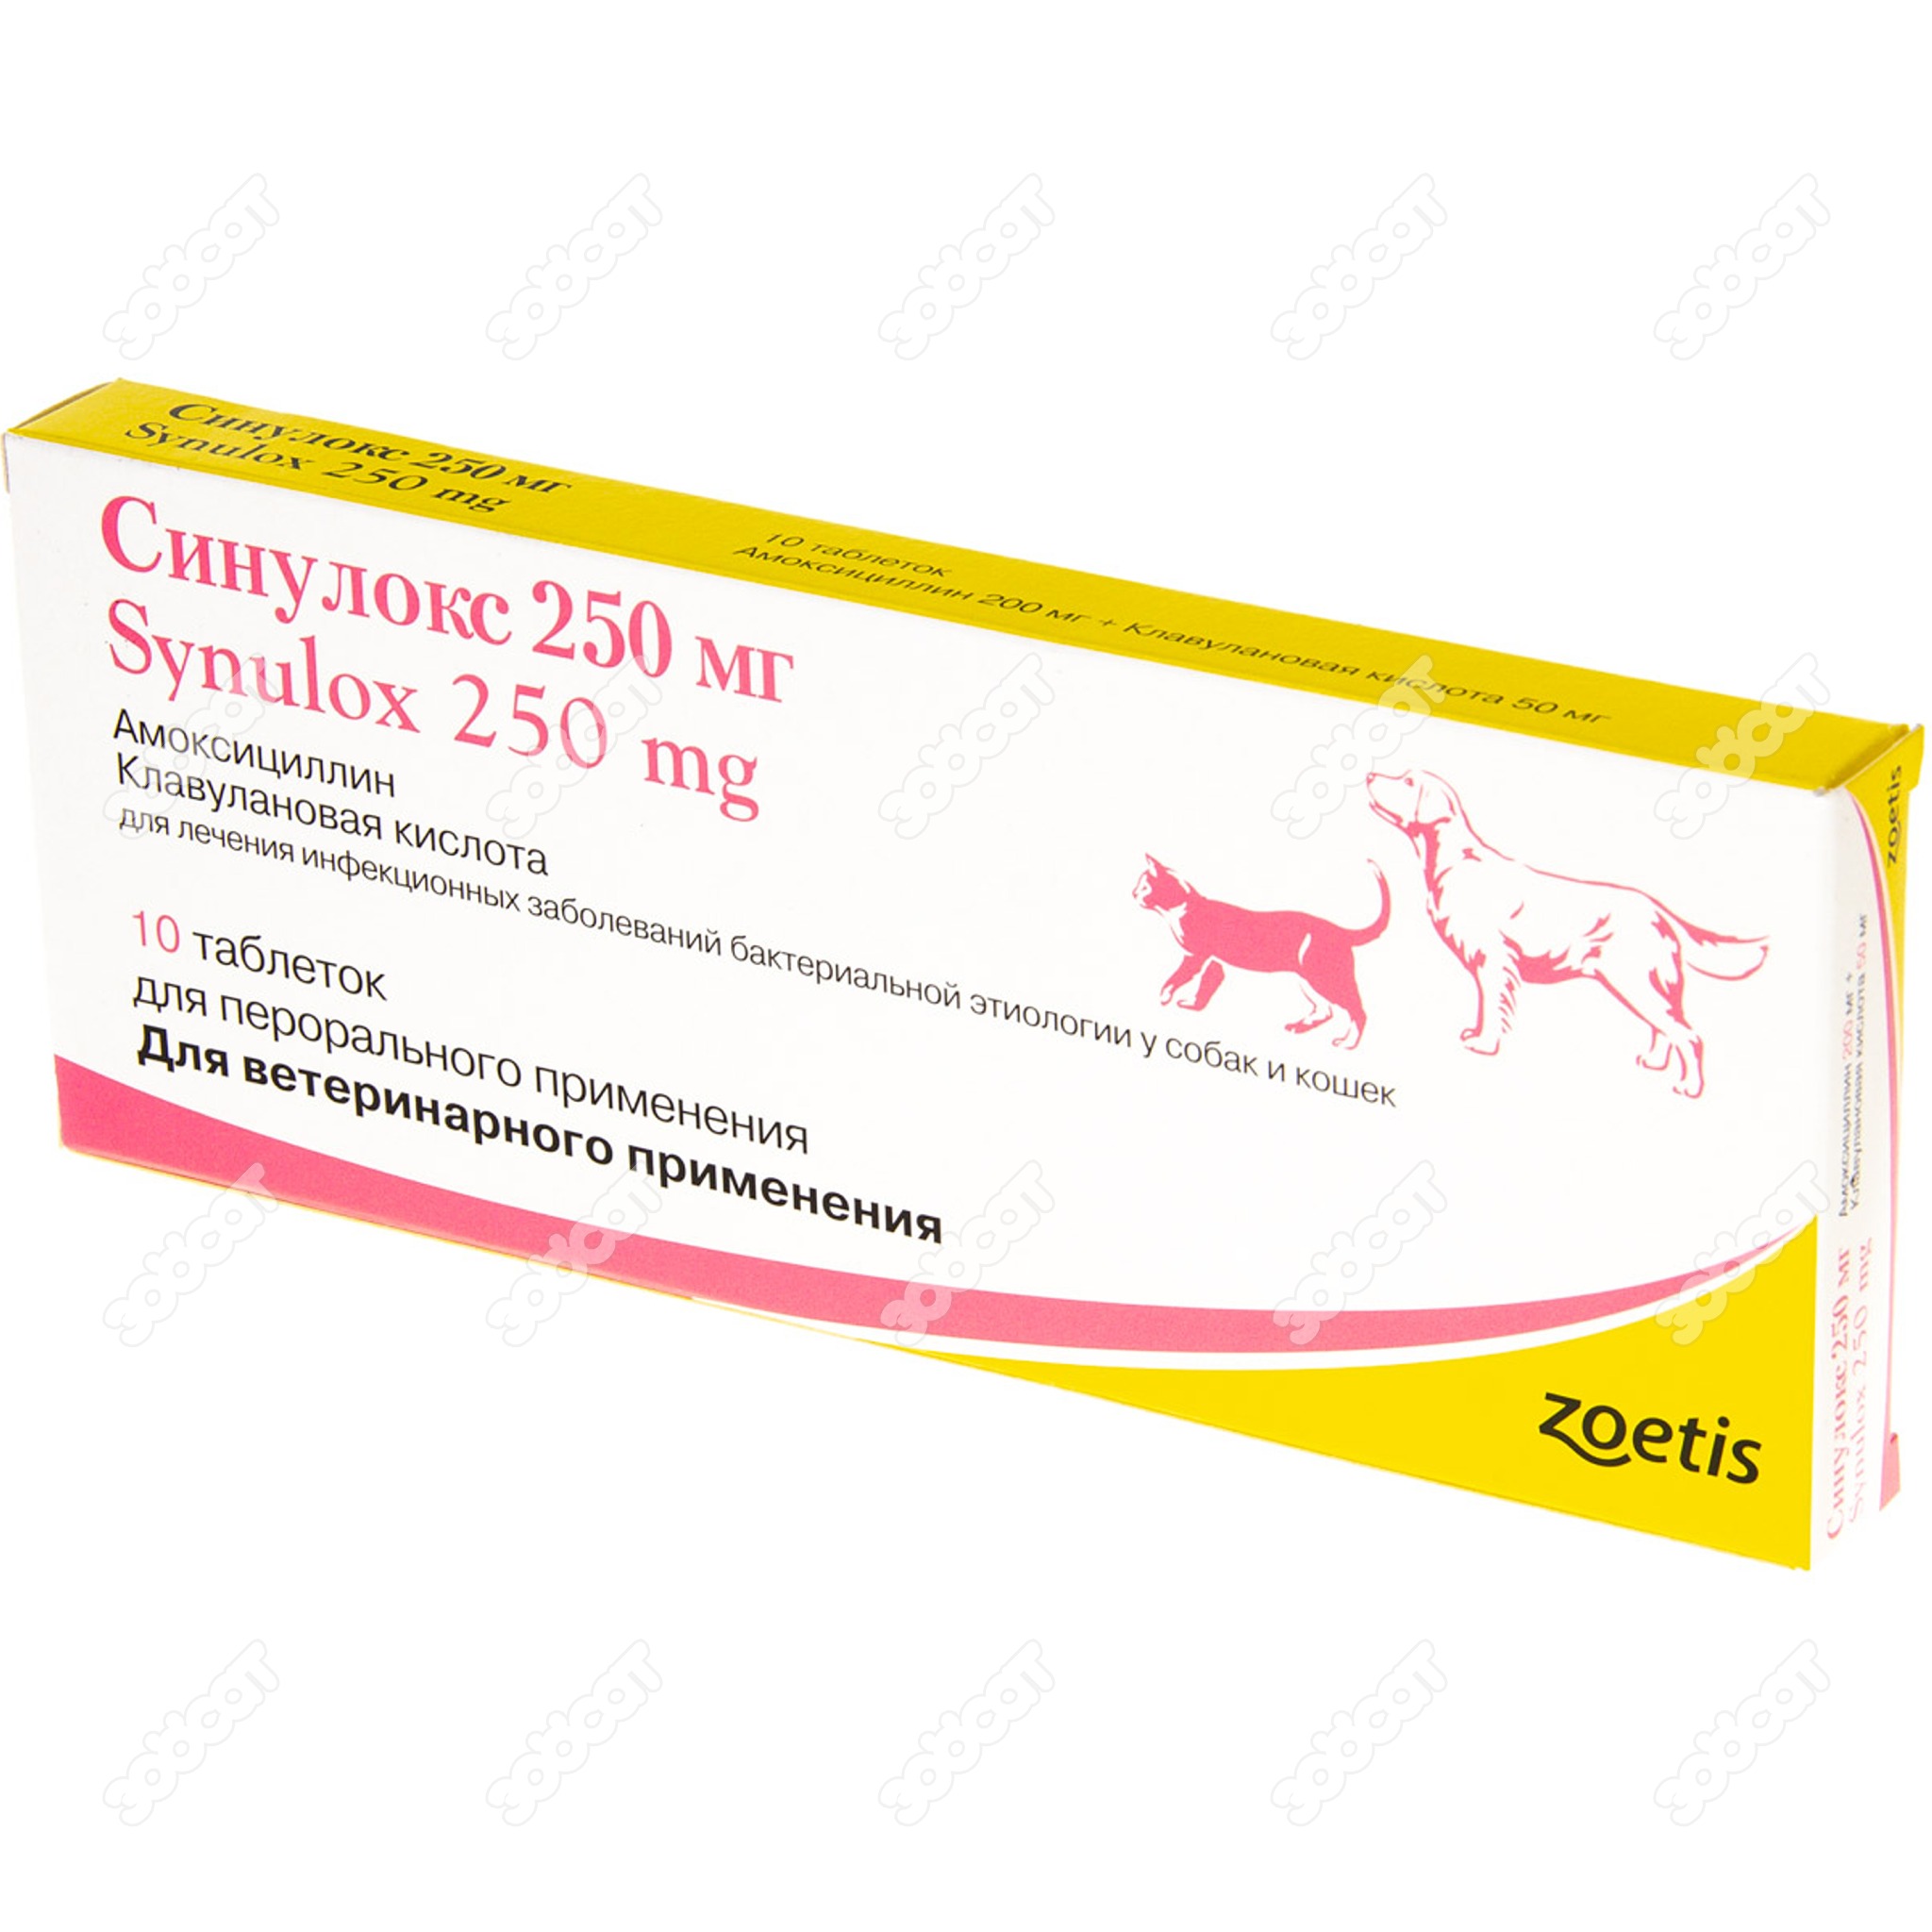 Купить синулокс 250 мг для собак. Синулокс 250 мг для собак. Синулокс 150 мг. Синулокс 200. Препарат ветеринарный синулокс 250 мг.